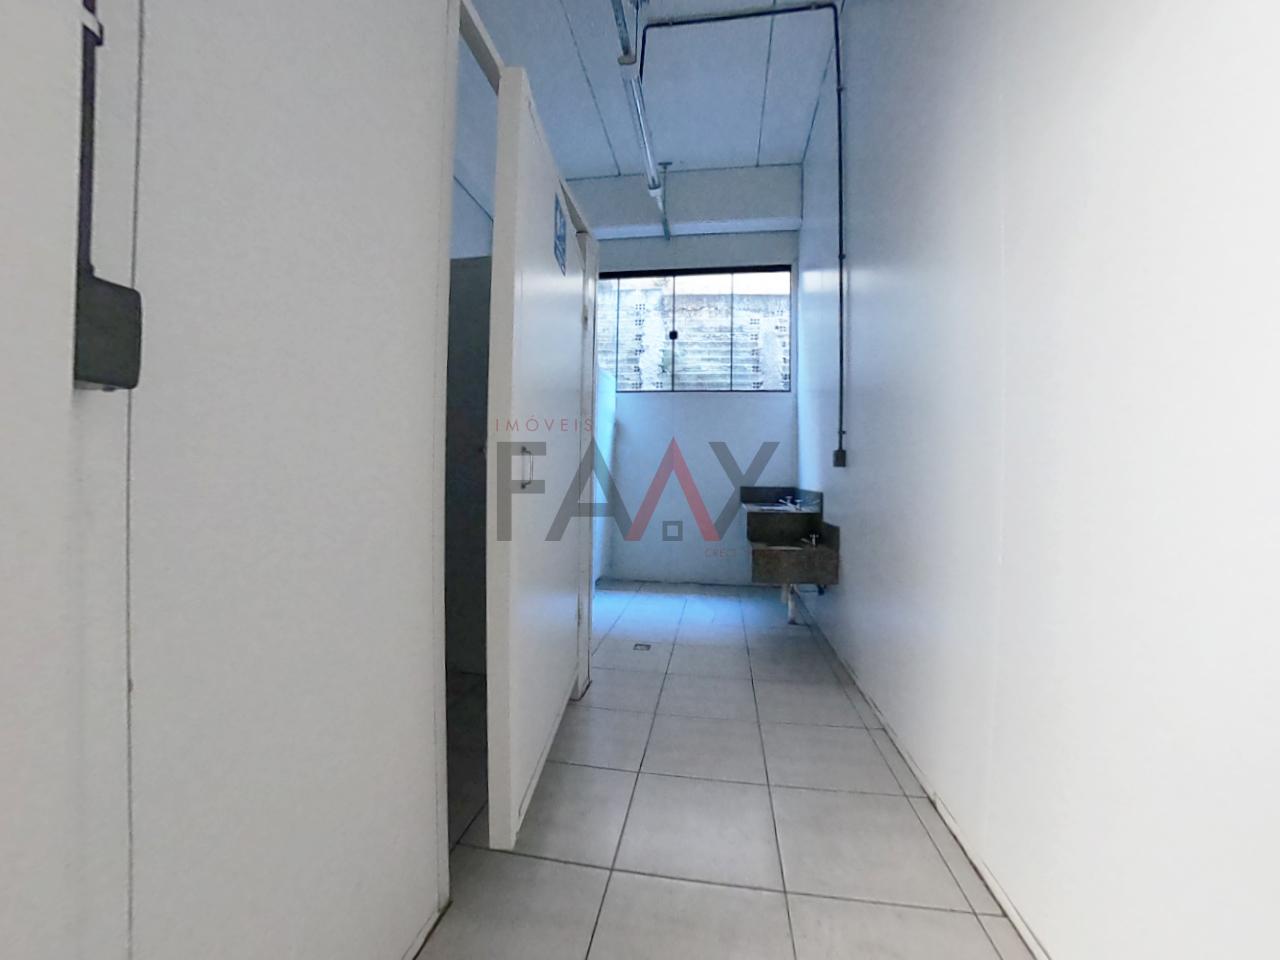 FAAX - Imobiliária Compra, Venda, Locação de Imóveis, Refinanciamento e Consórci